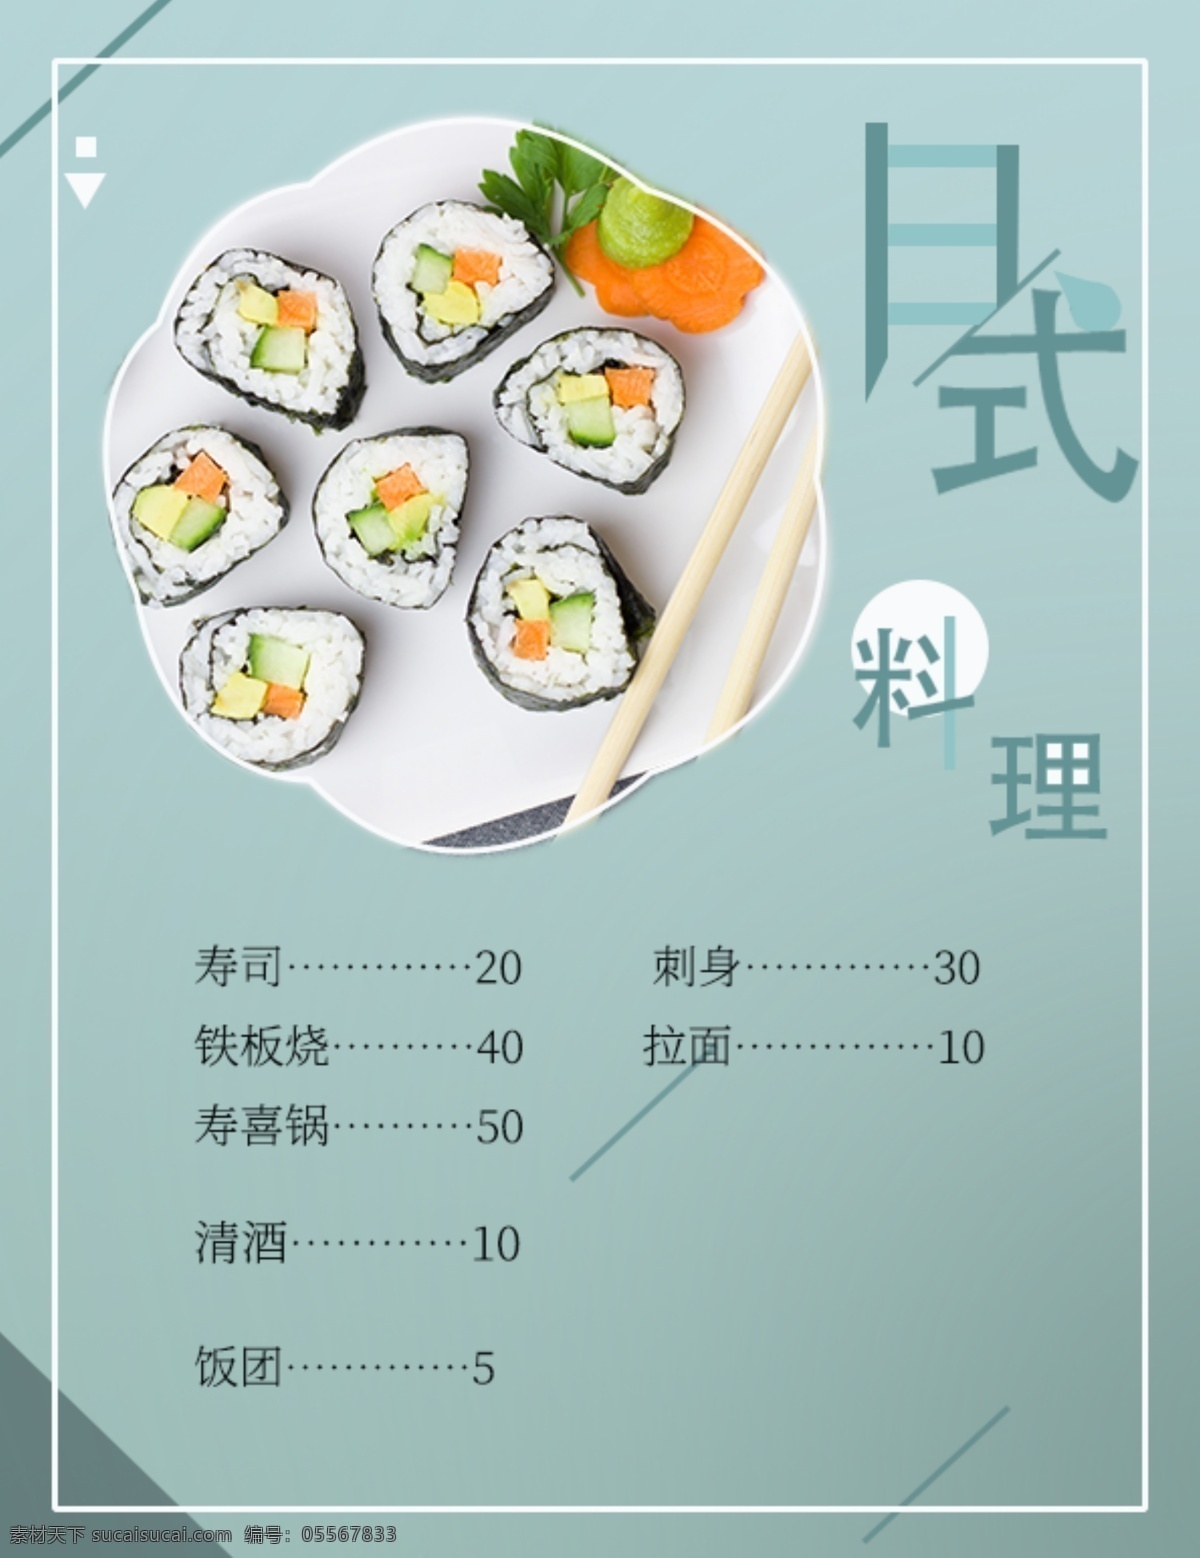 日式 料理 菜单 海报 小清新 素色 文艺